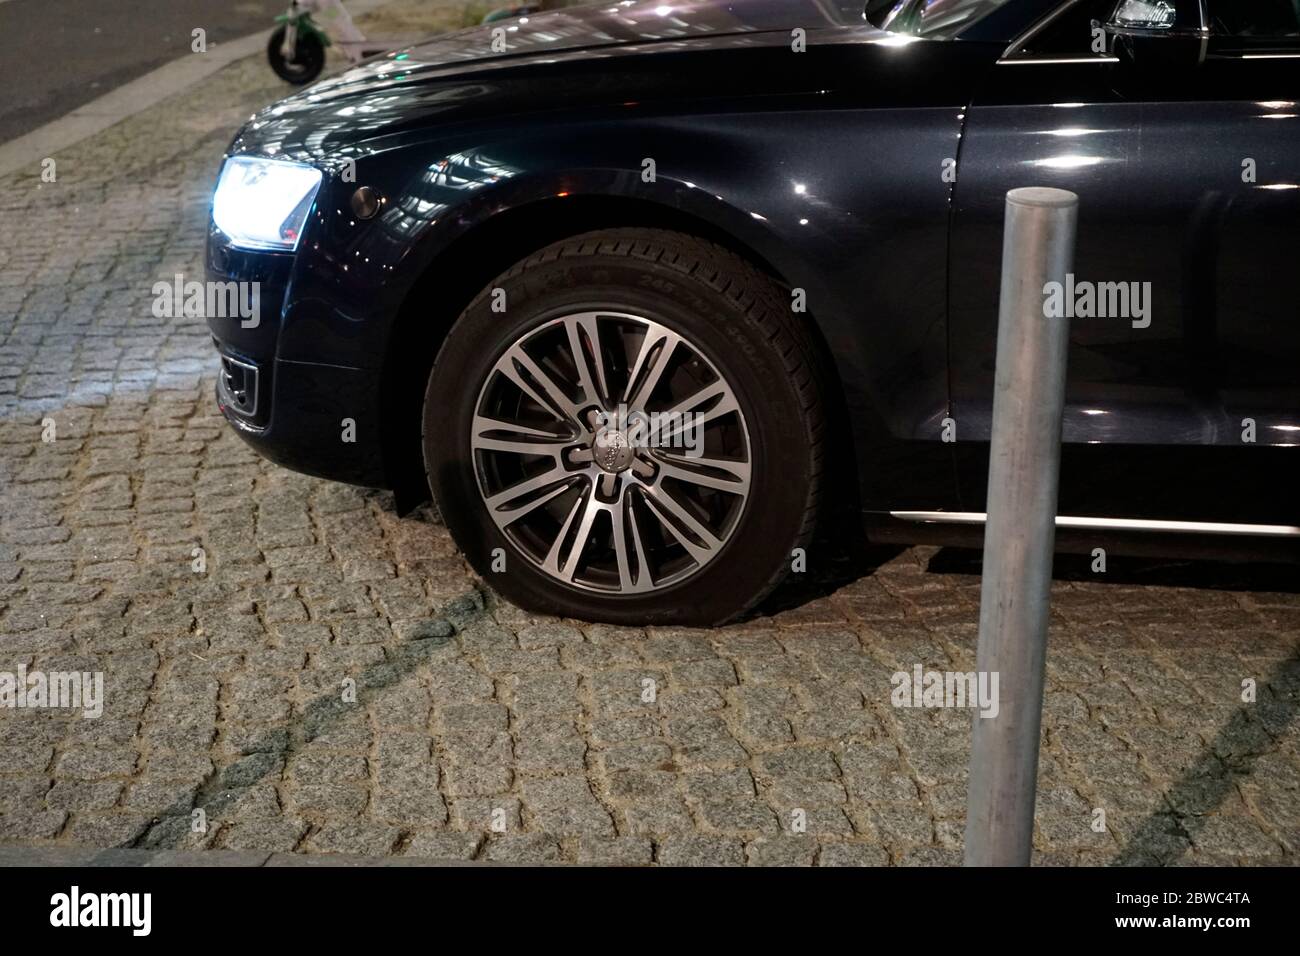 Platten an Fahrzeug Nr. 2 vorne, zwei Audi Limousinen, die die Autokolonne  der Bundeskanzlerin darstellen, bei geanuerem Hinsehen, haben BEIDE FAHRZEU  Stock Photo - Alamy